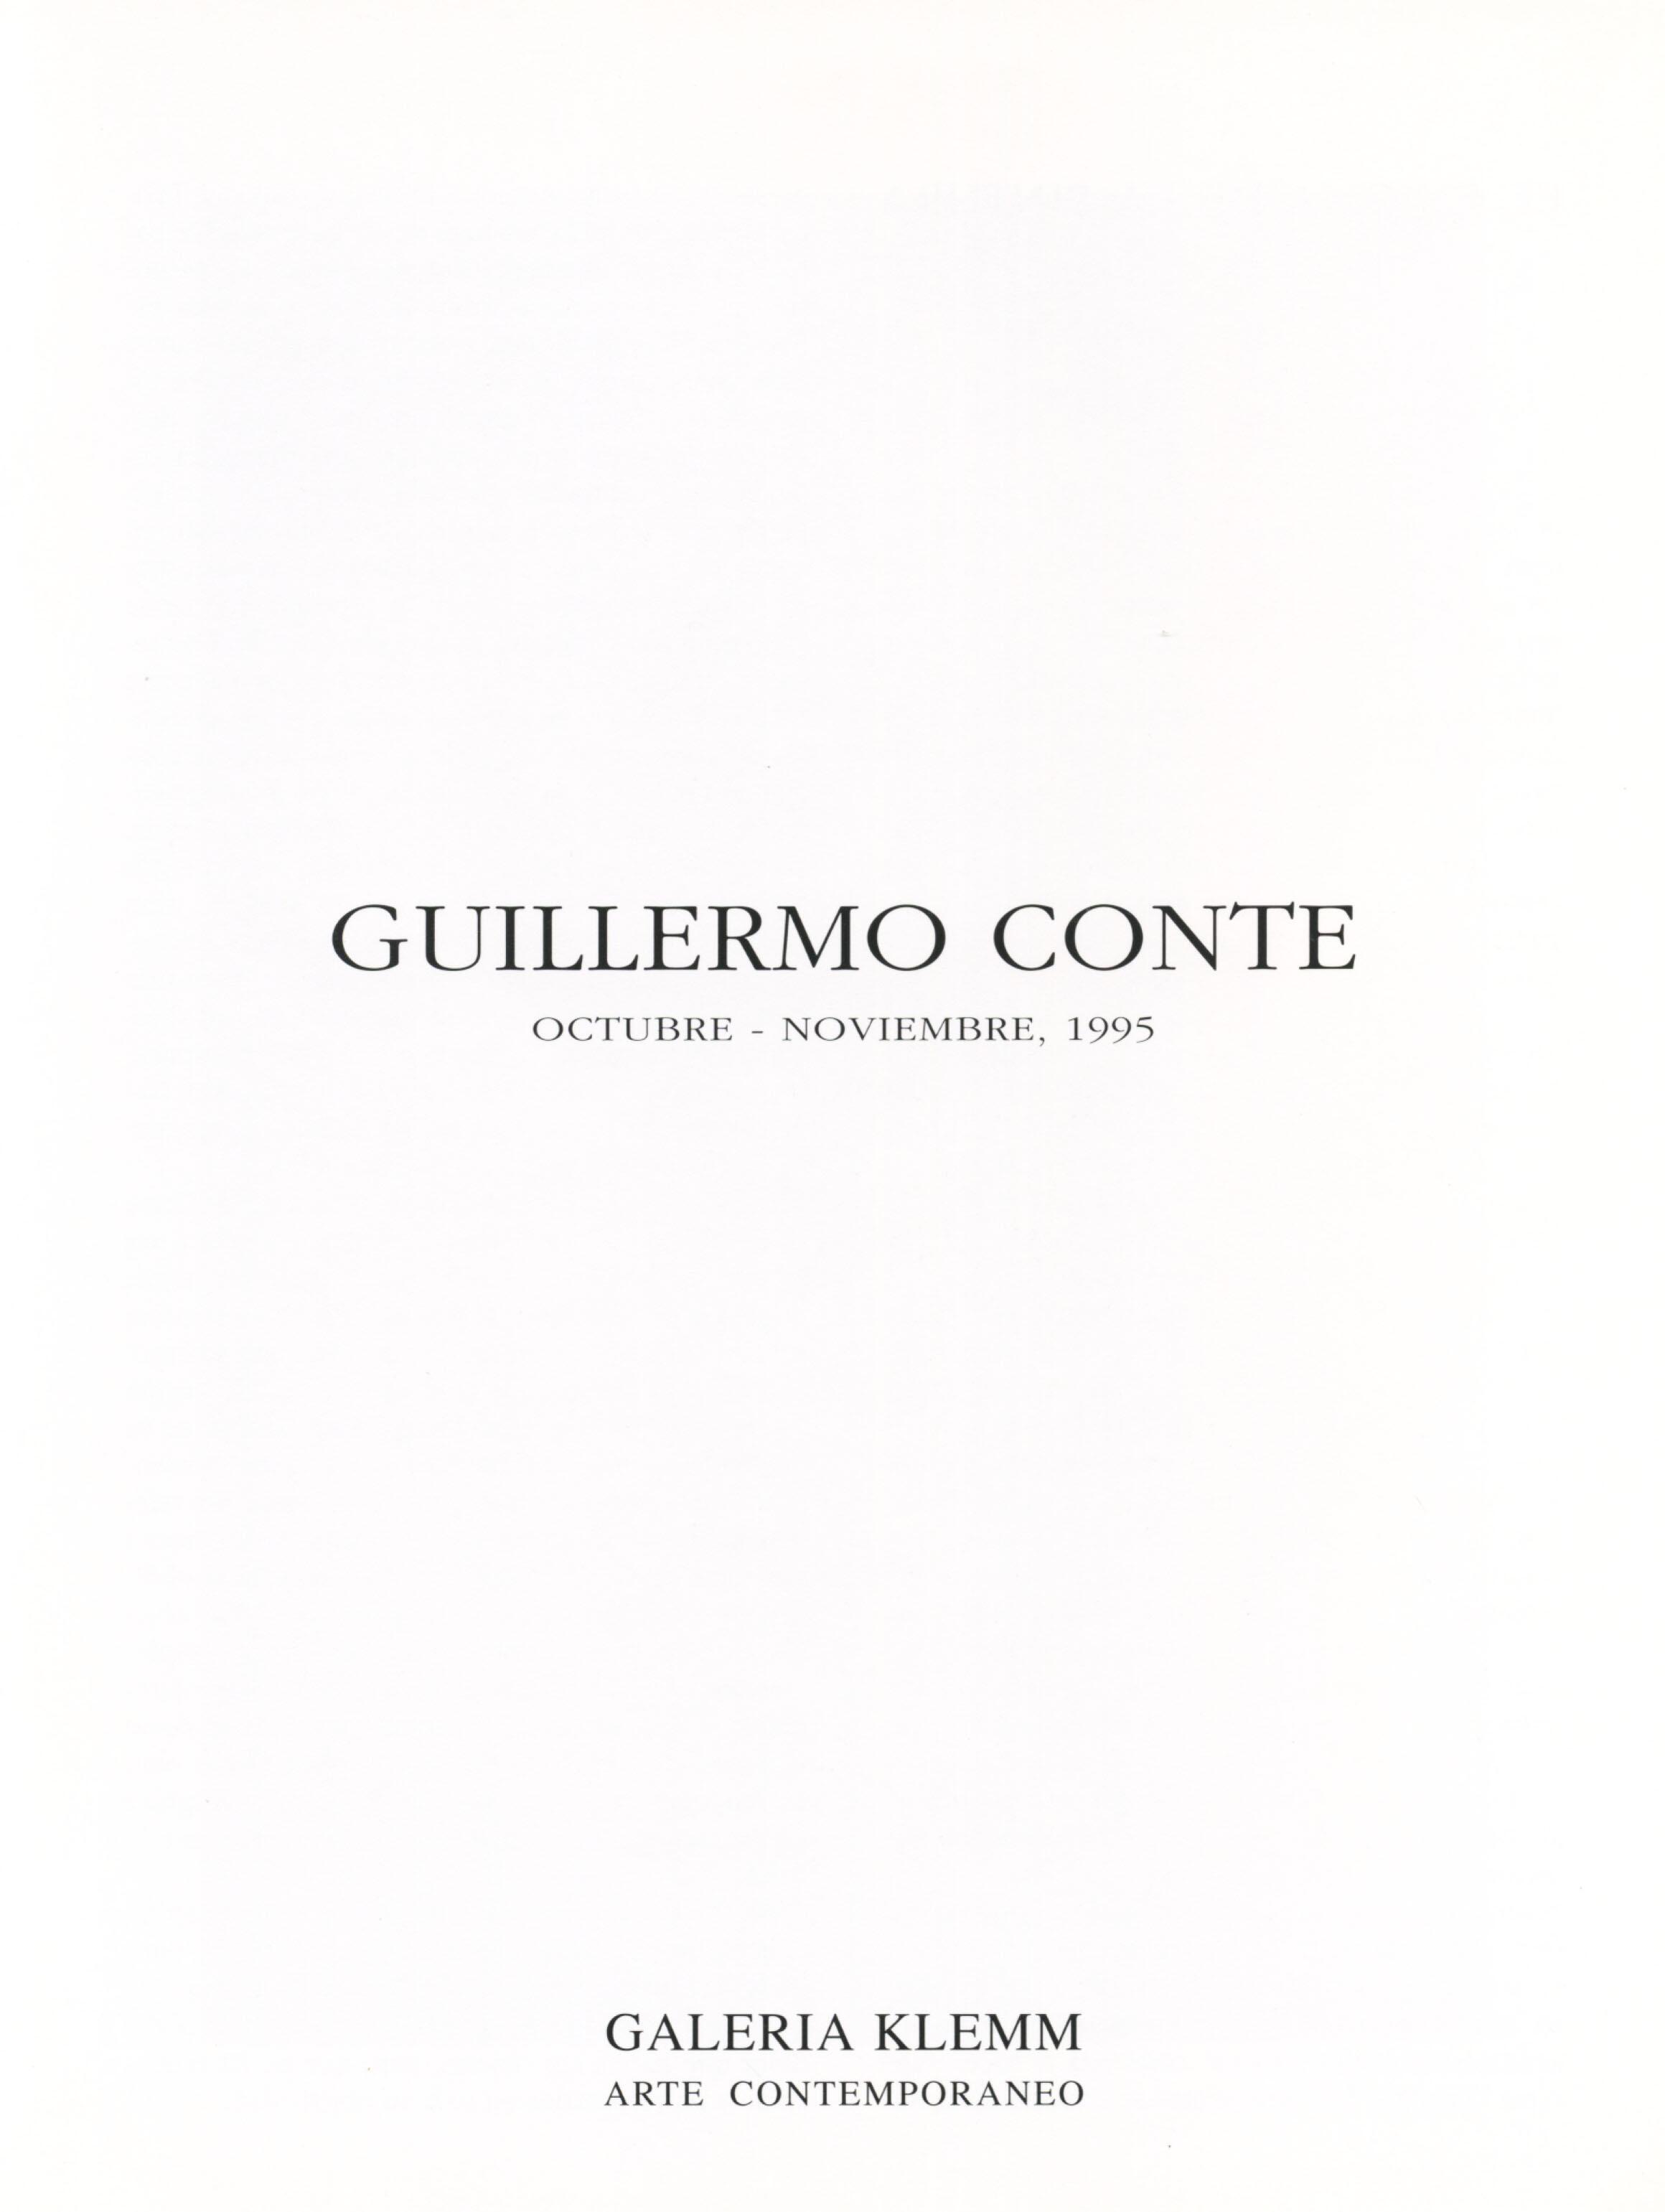 Guillermo Conte